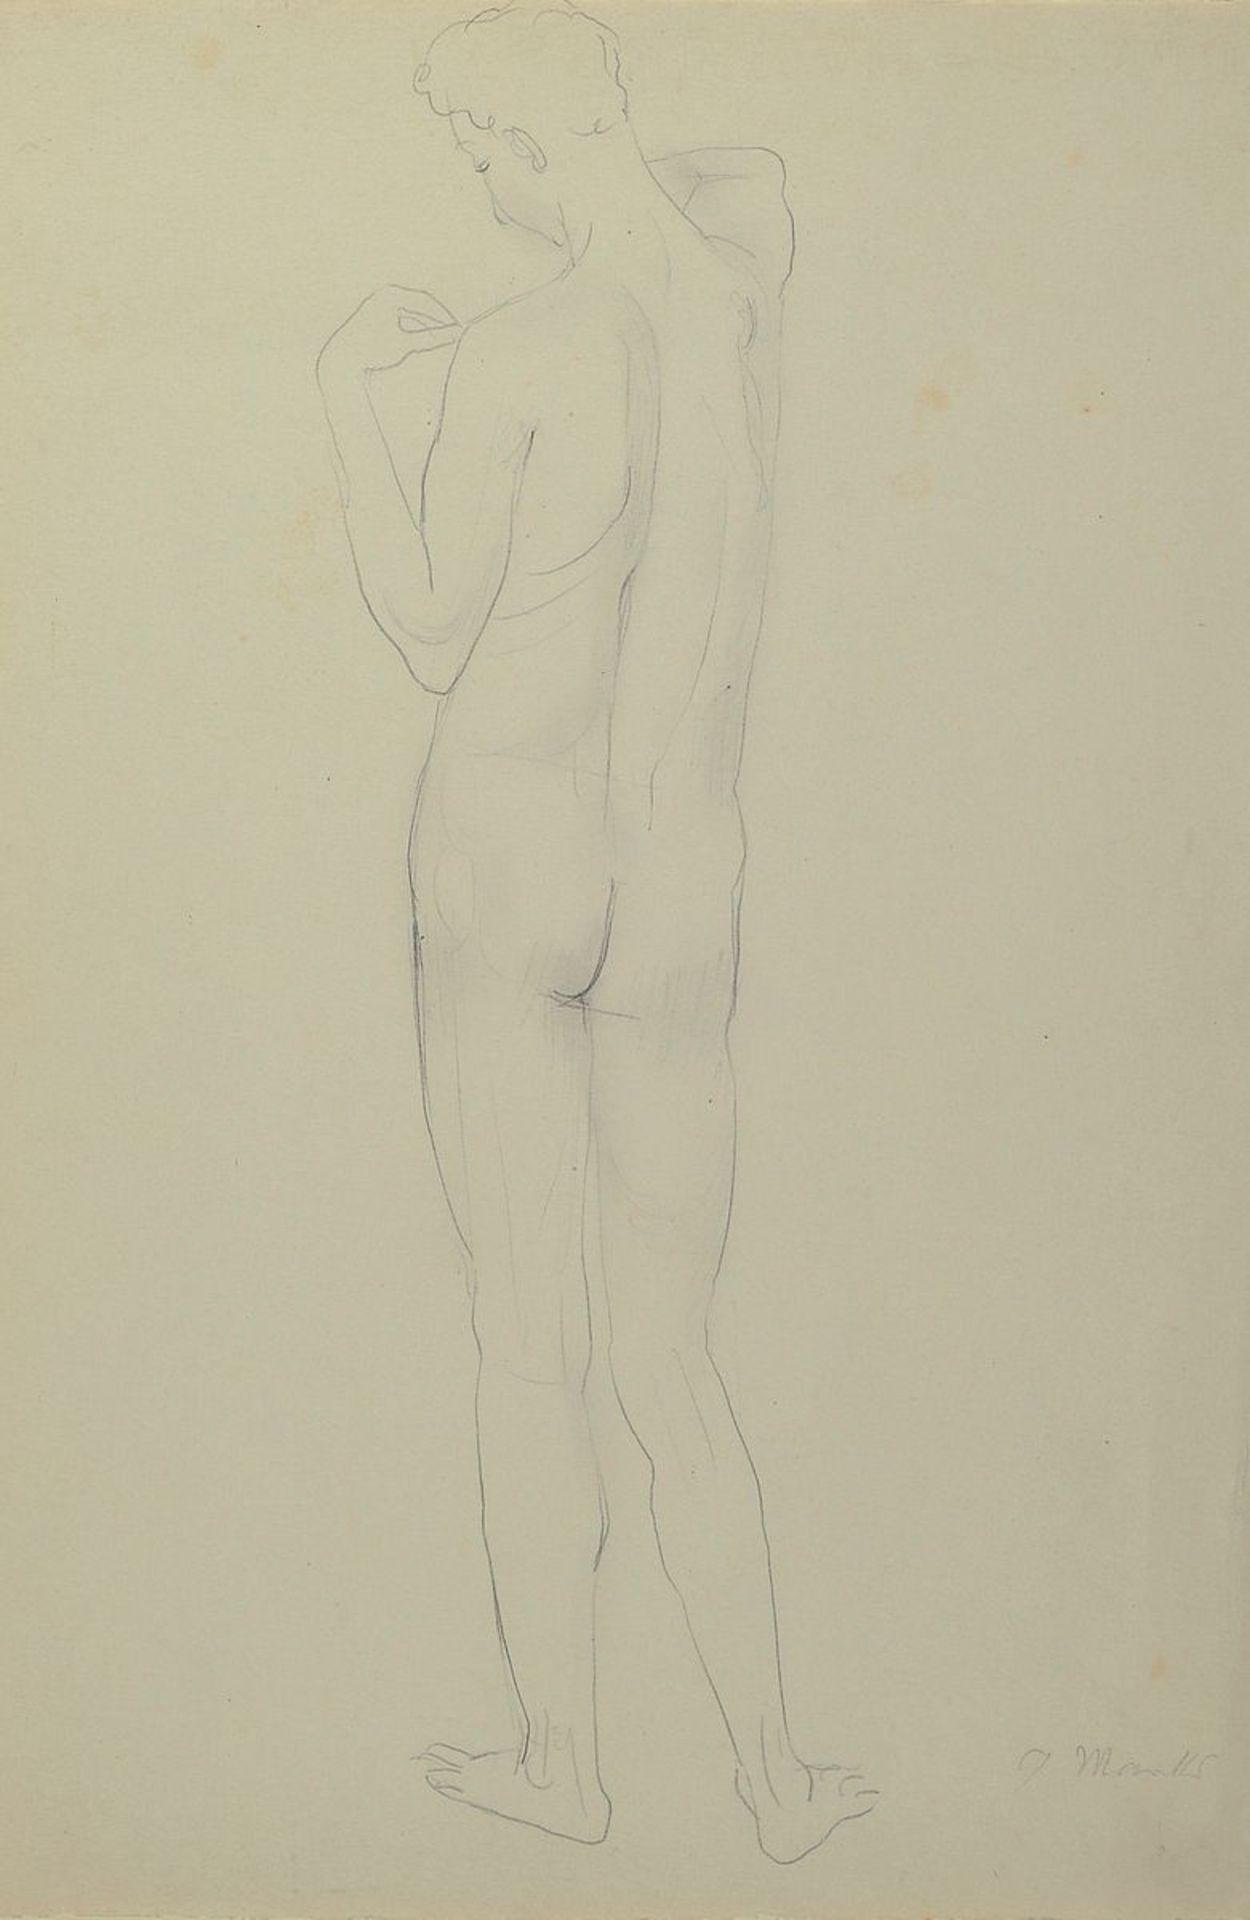 Gerhard Marcks, 1889 Berlin - 1981 Burgbrohl, Bleistiftzeichnung, Rückenakt eines Mannes,signiert,